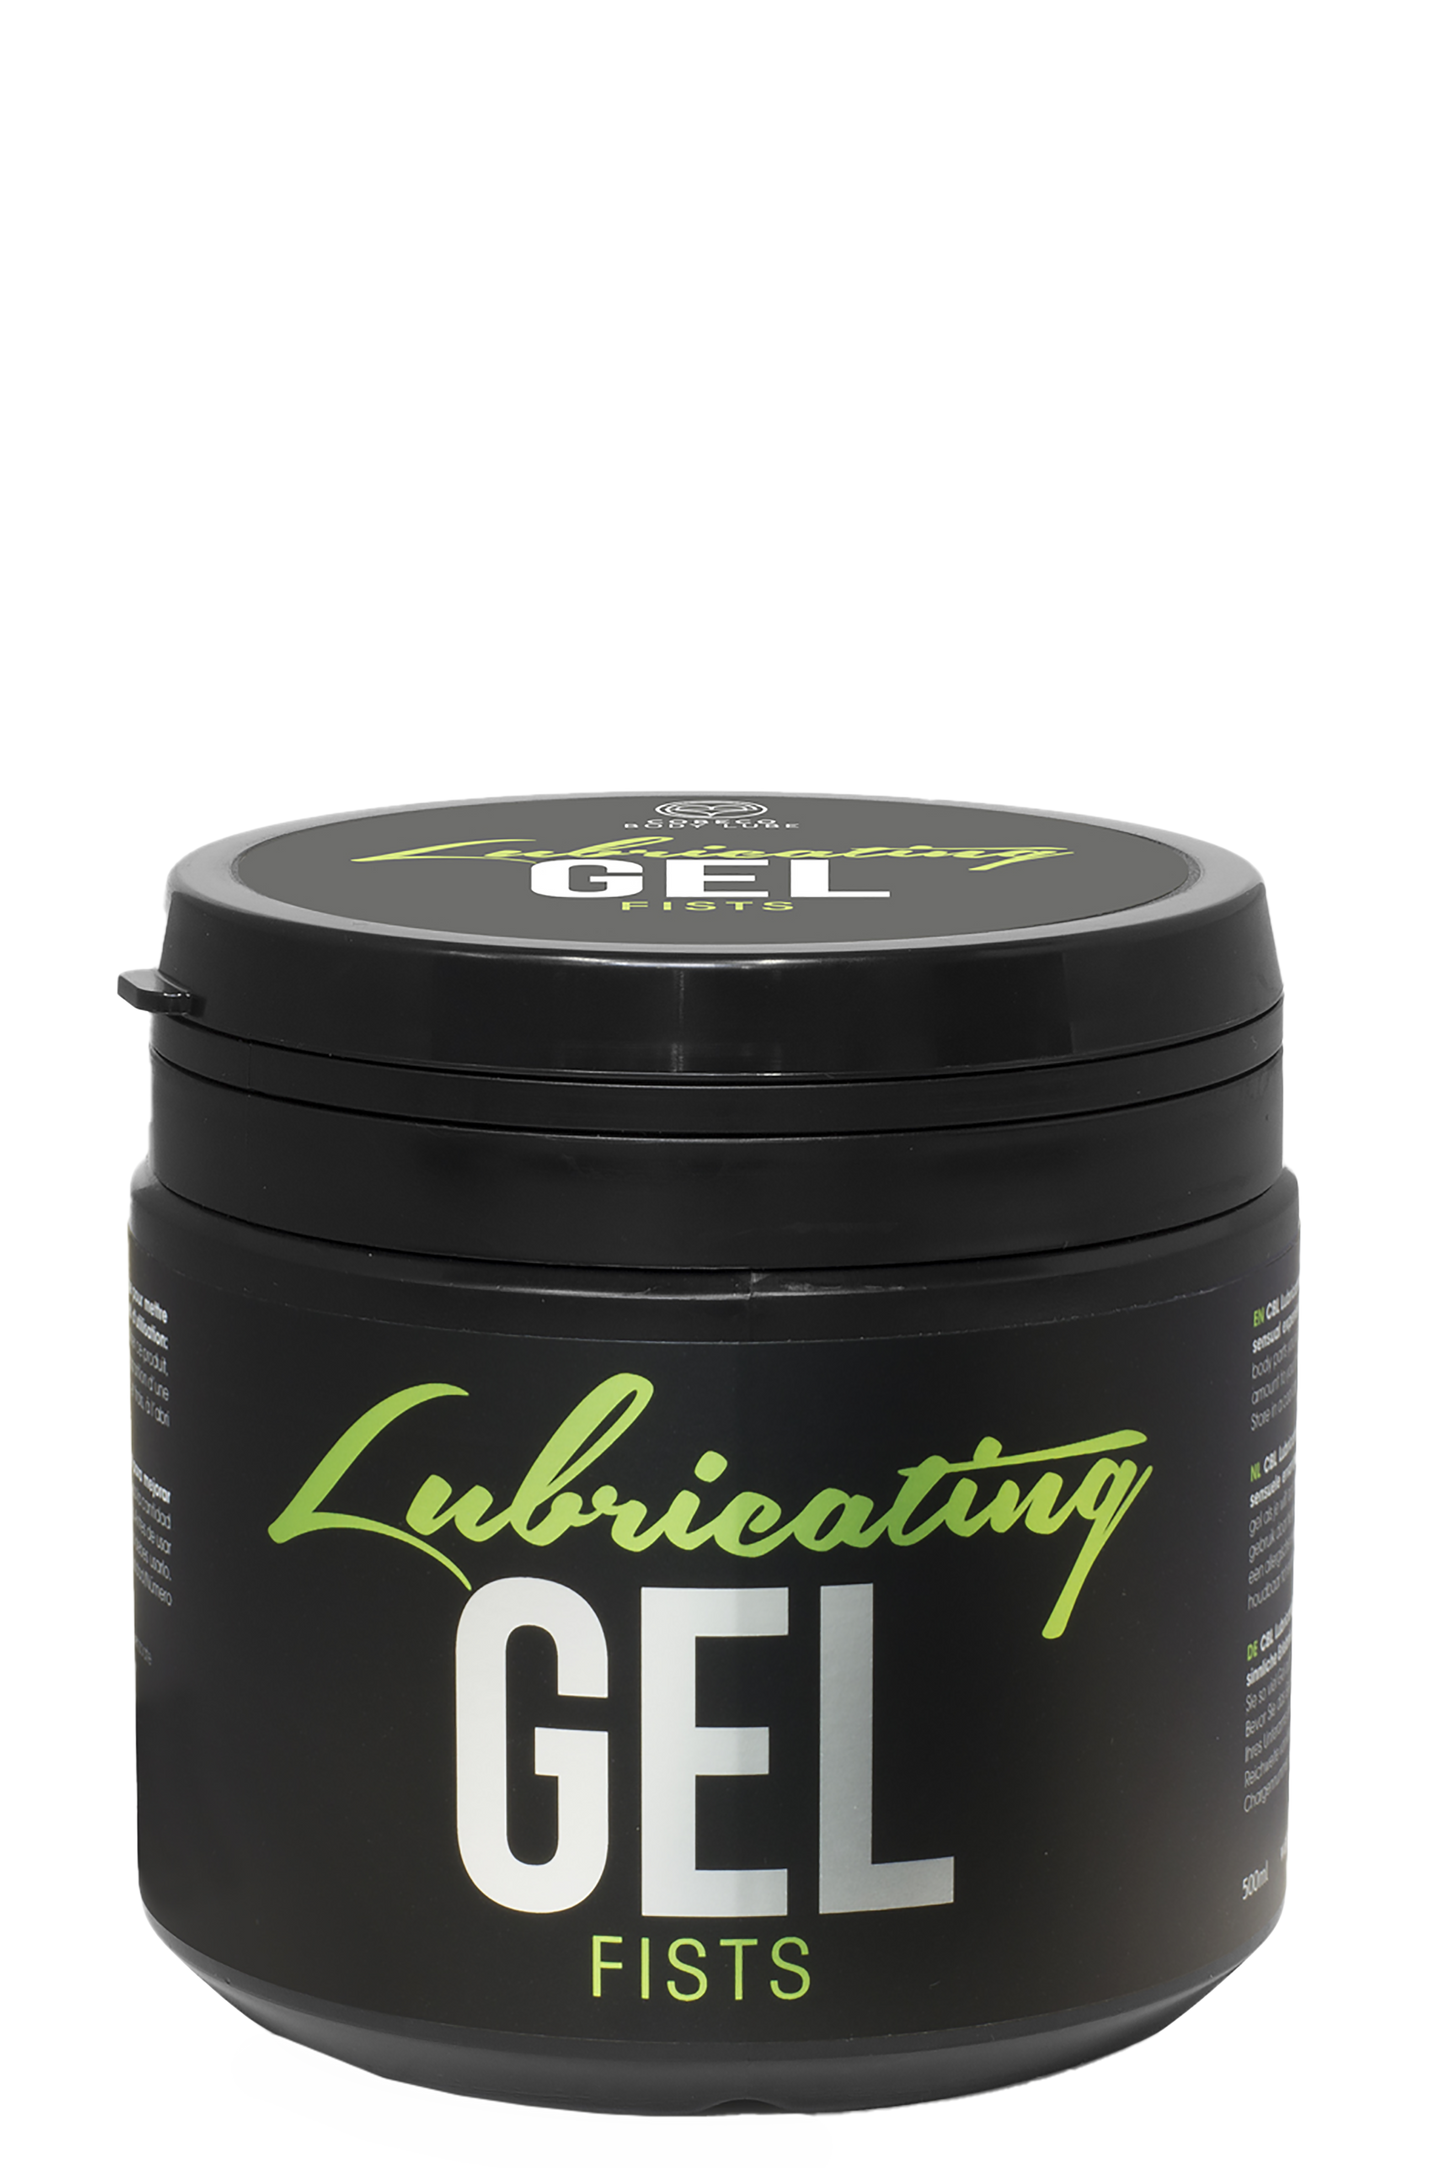 Lubricating Gel Fists 500ml Waterbased Gel